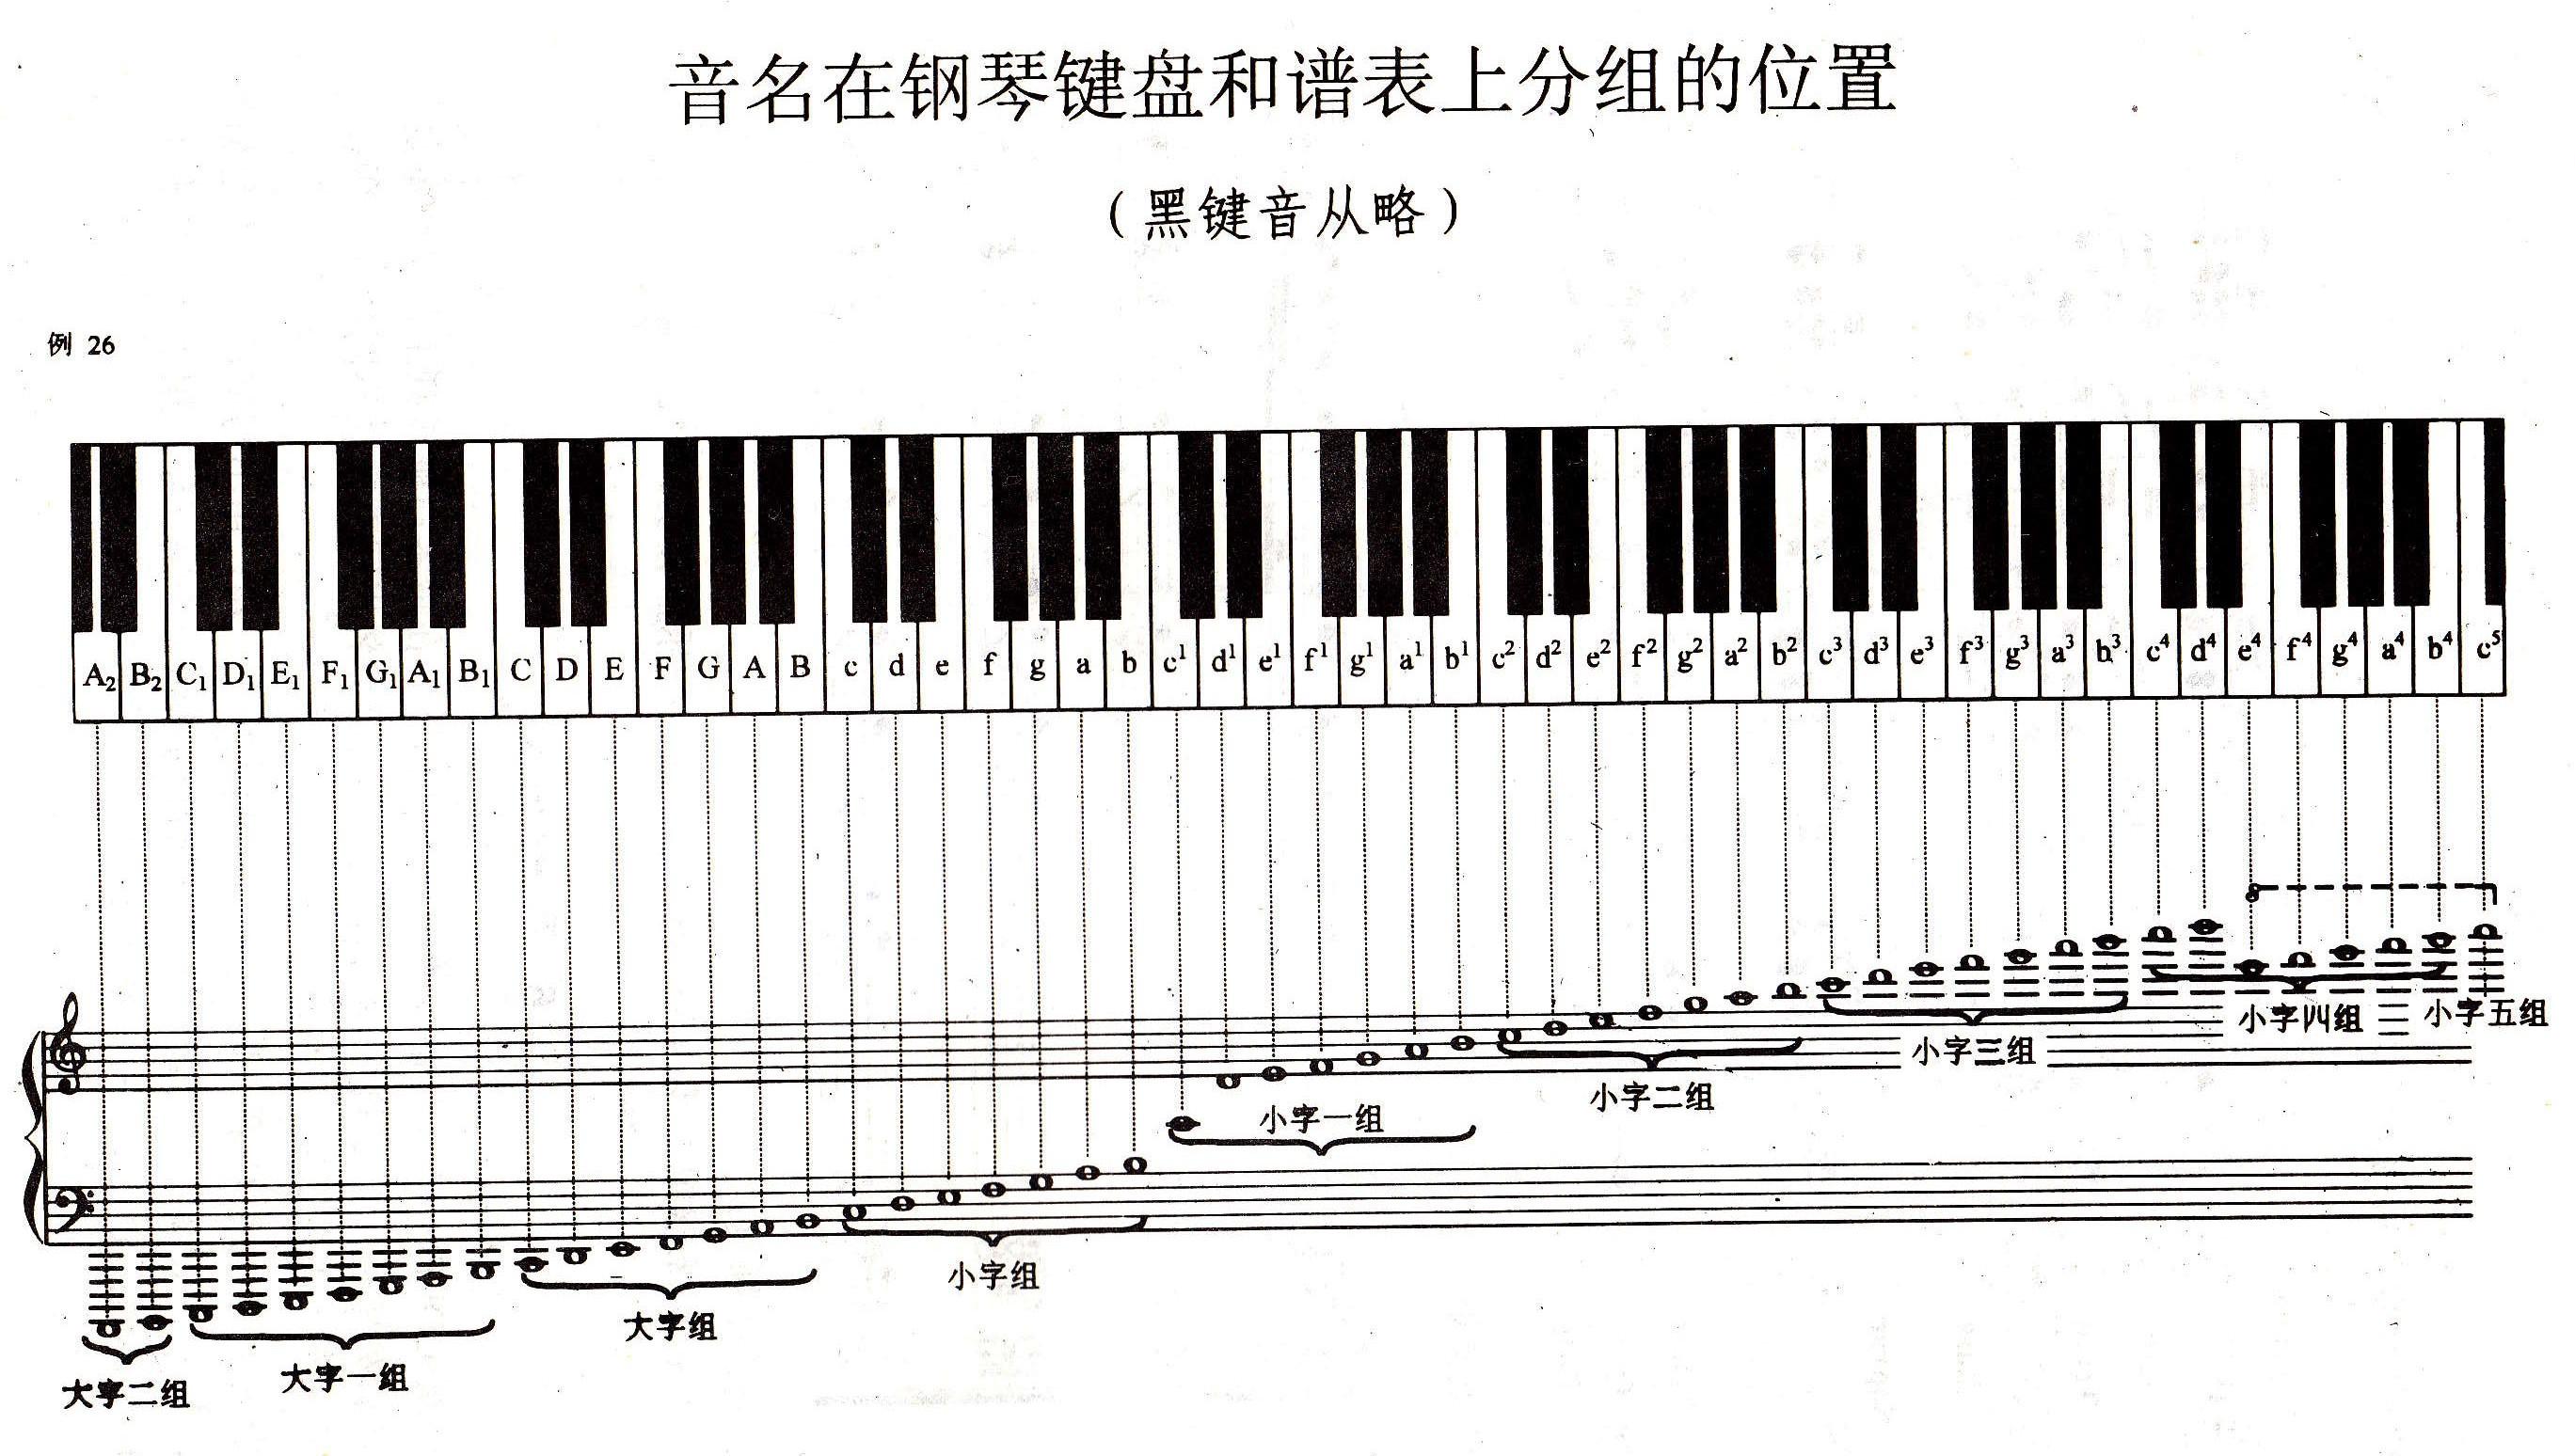 钢琴符号图案对照表（钢琴音符的基本认识） - 科猫网